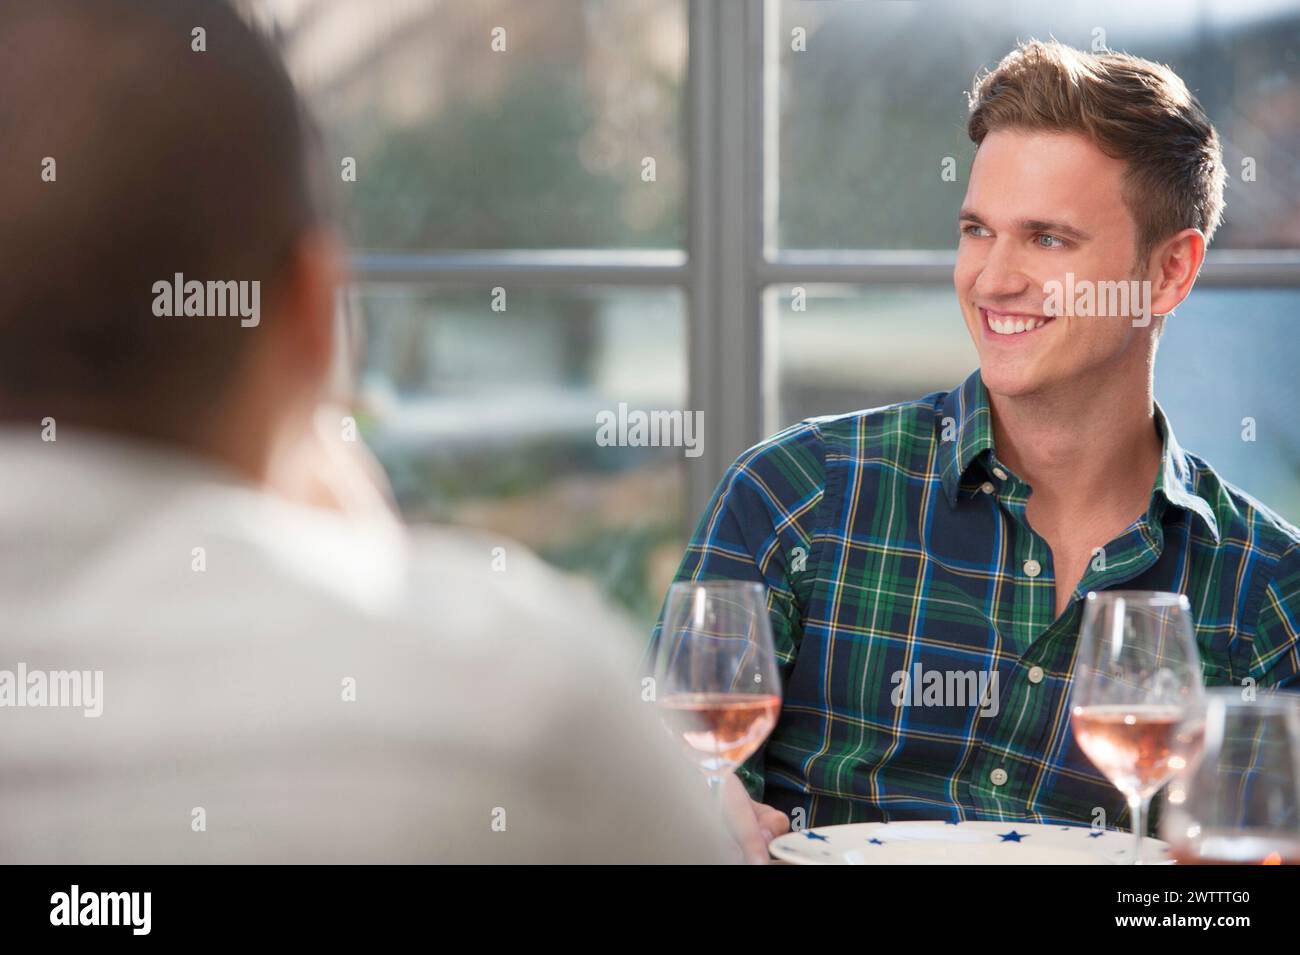 Deux personnes s'engageant dans la conversation à une table à manger. Banque D'Images